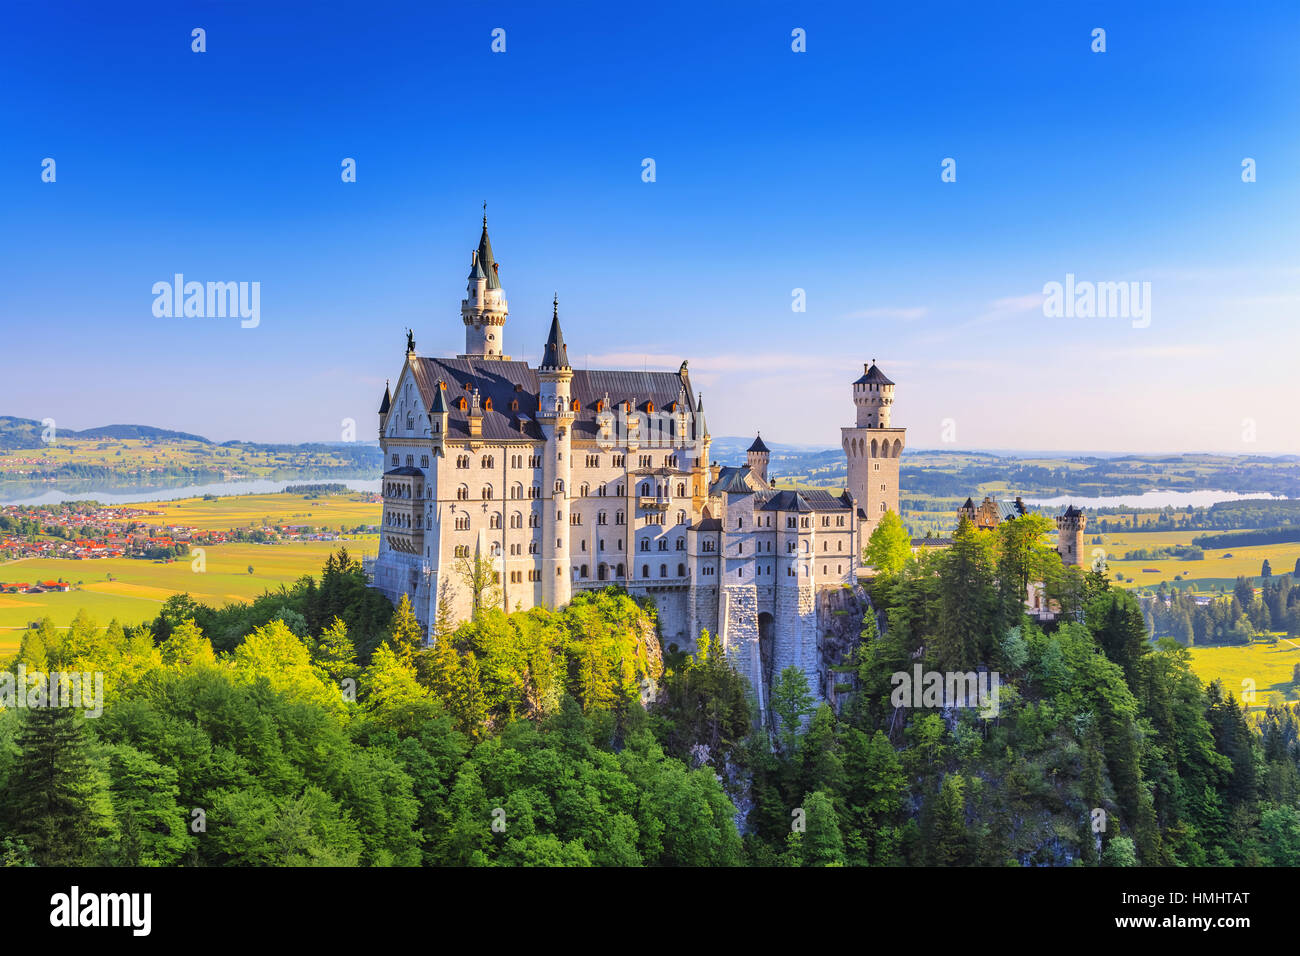 Summer view of Neuschwanstein Castle, Fussen, Bavaria, Germany Stock Photo